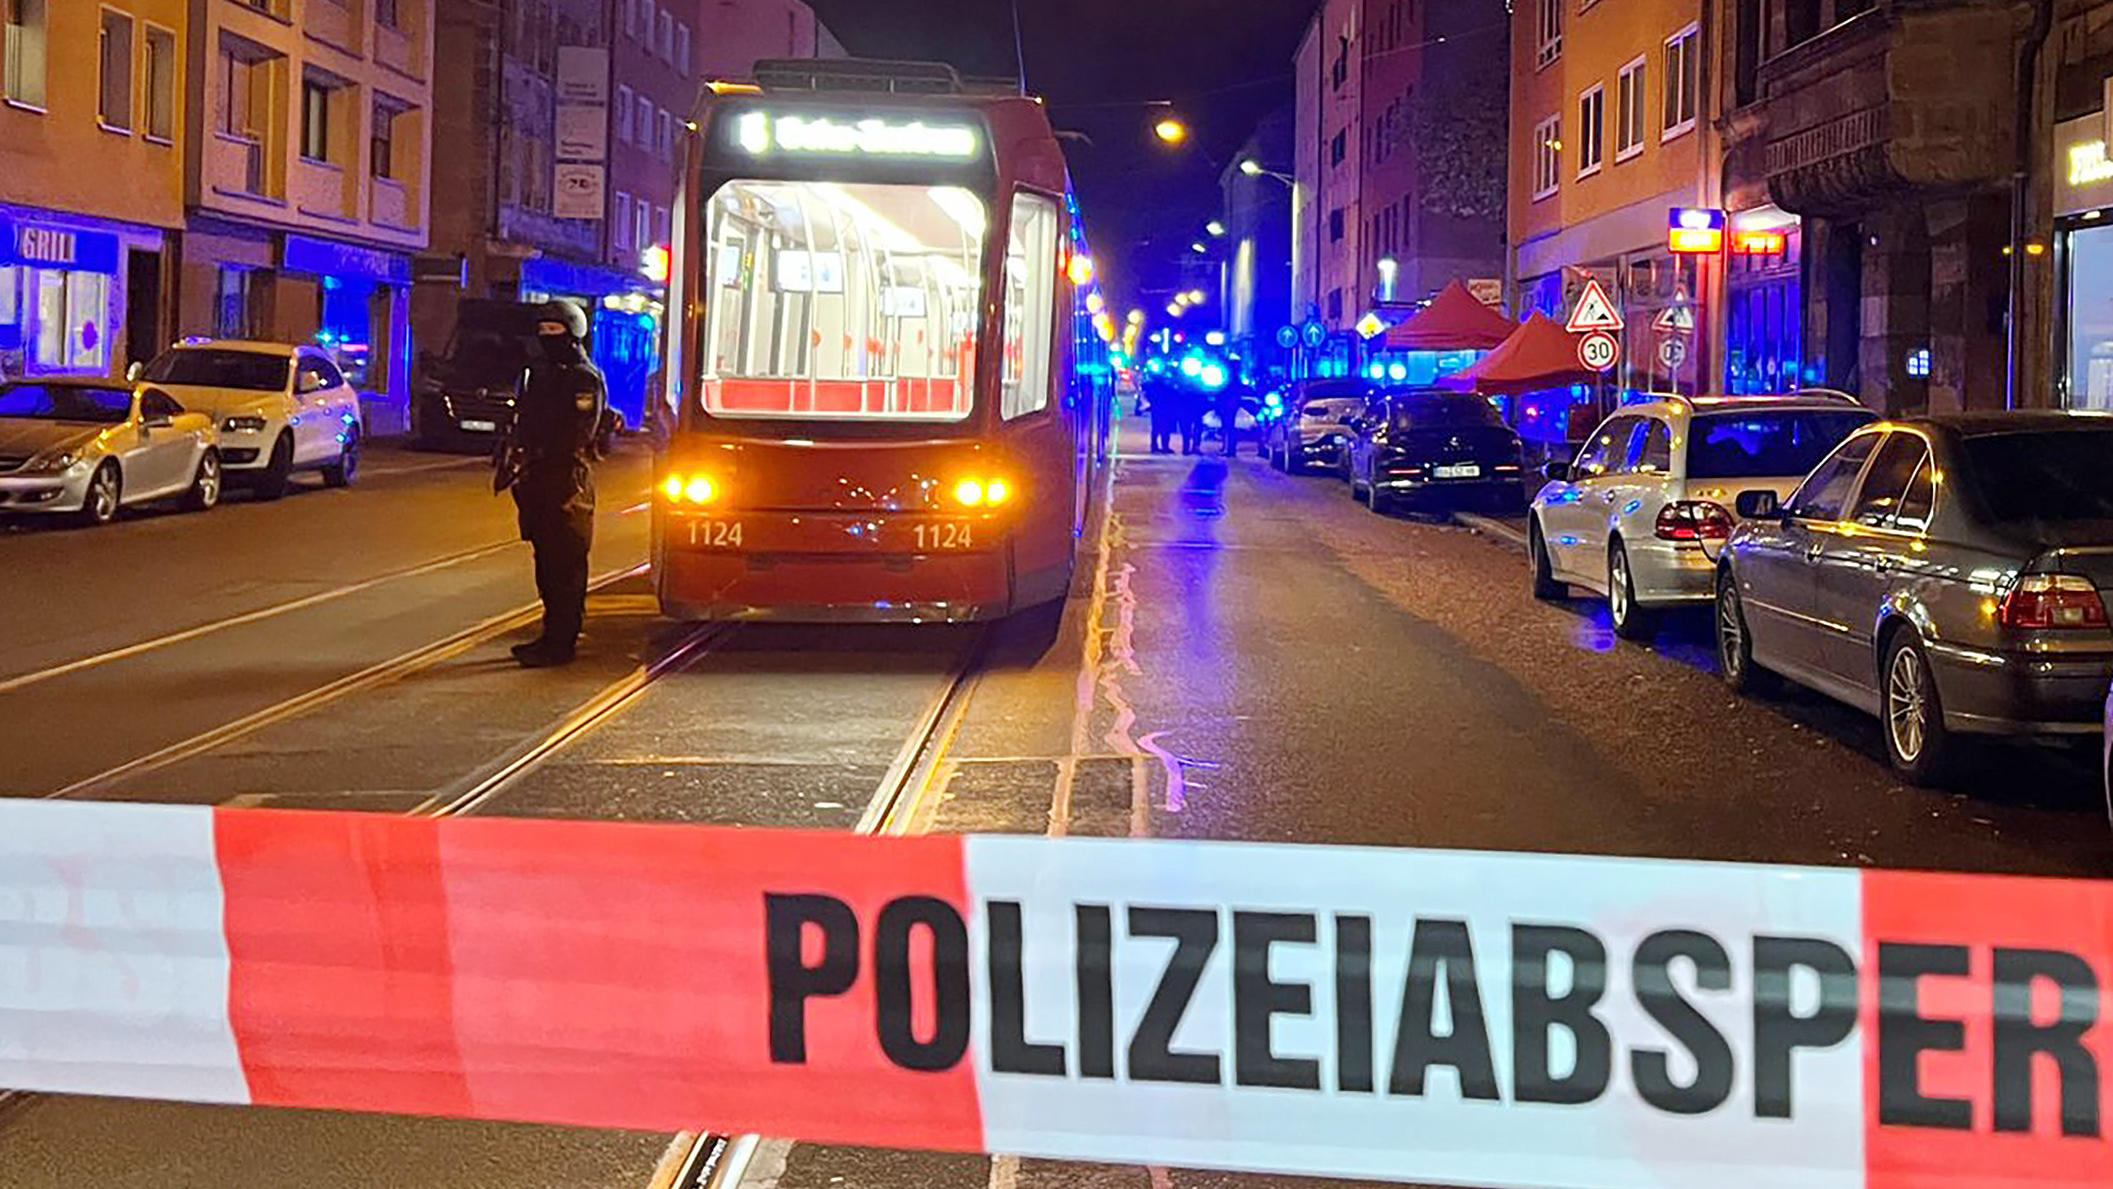 24.10.2022, Bayern, Nürnberg: Ein Polizist steht mit einer Maschinenpistole neben einer Straßenbahn hinter einer Polizeiabsperrung. Bei Schüssen in der Nürnberger Südstadt sind am Montagabend zwei Menschen schwer verletzt worden. Gegen 20.00 Uhr habe